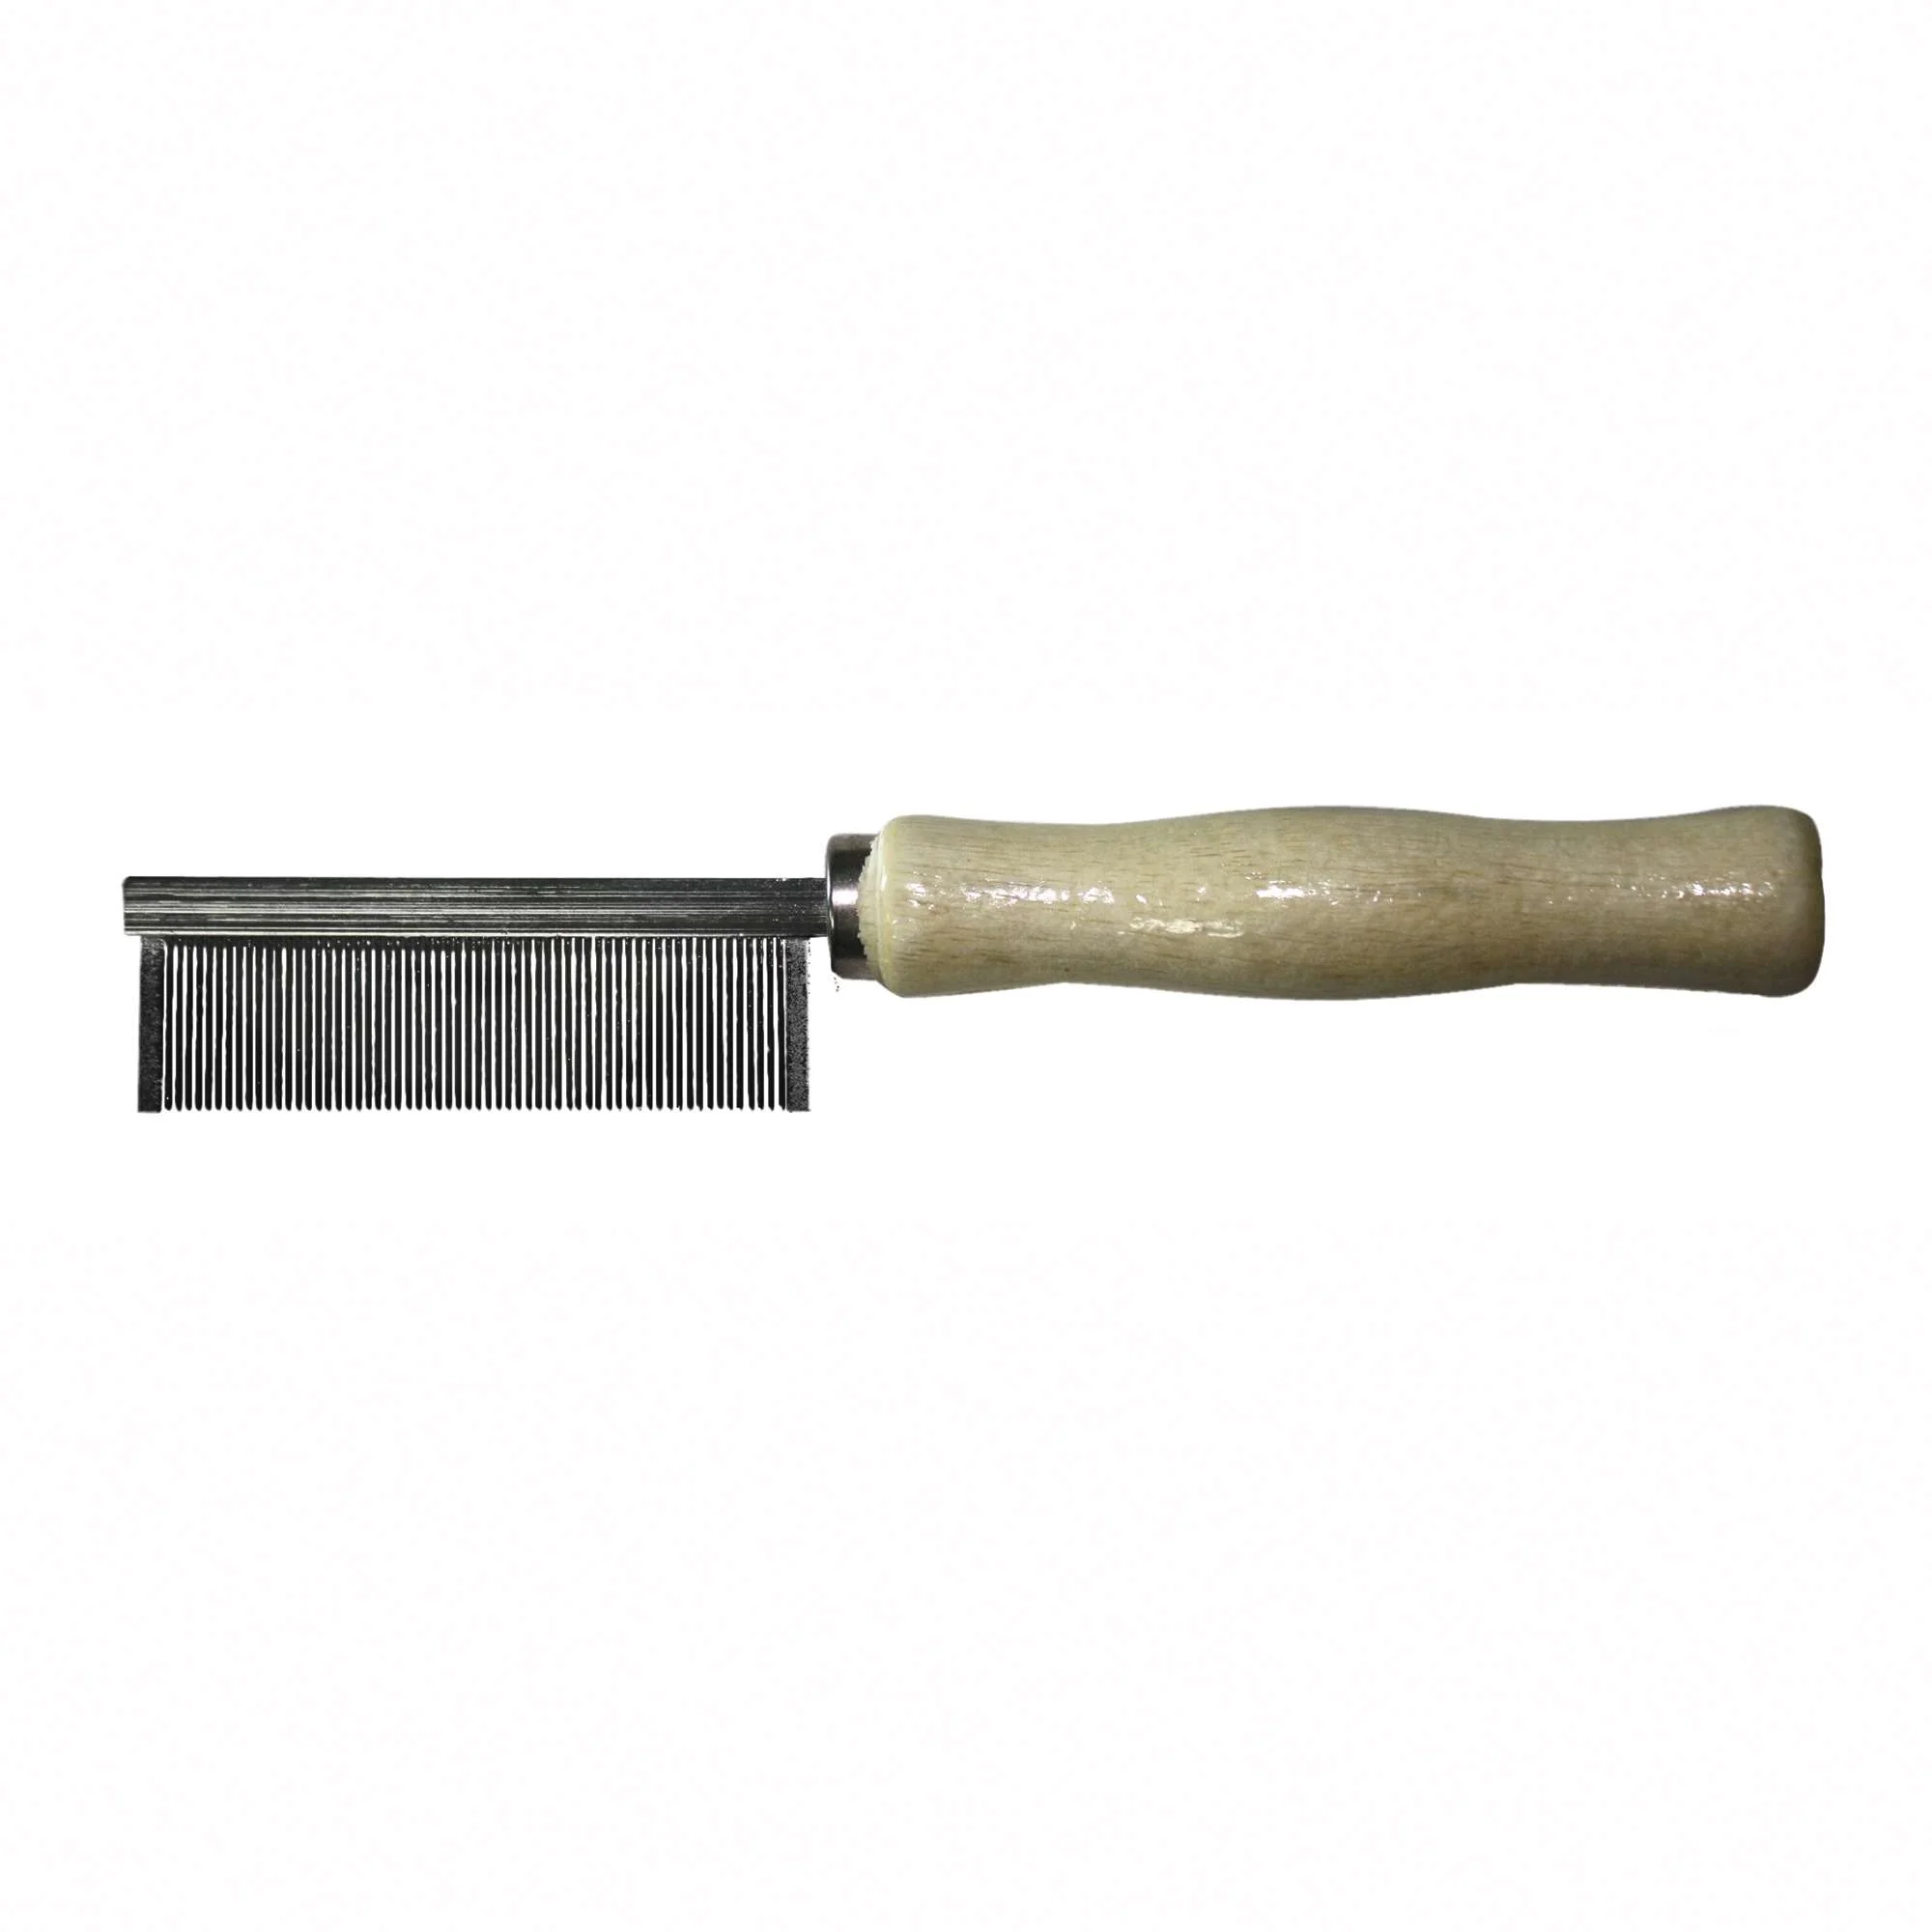 Peine de madera extra (pelo fino) (2.9 cm) — ICA S.A.